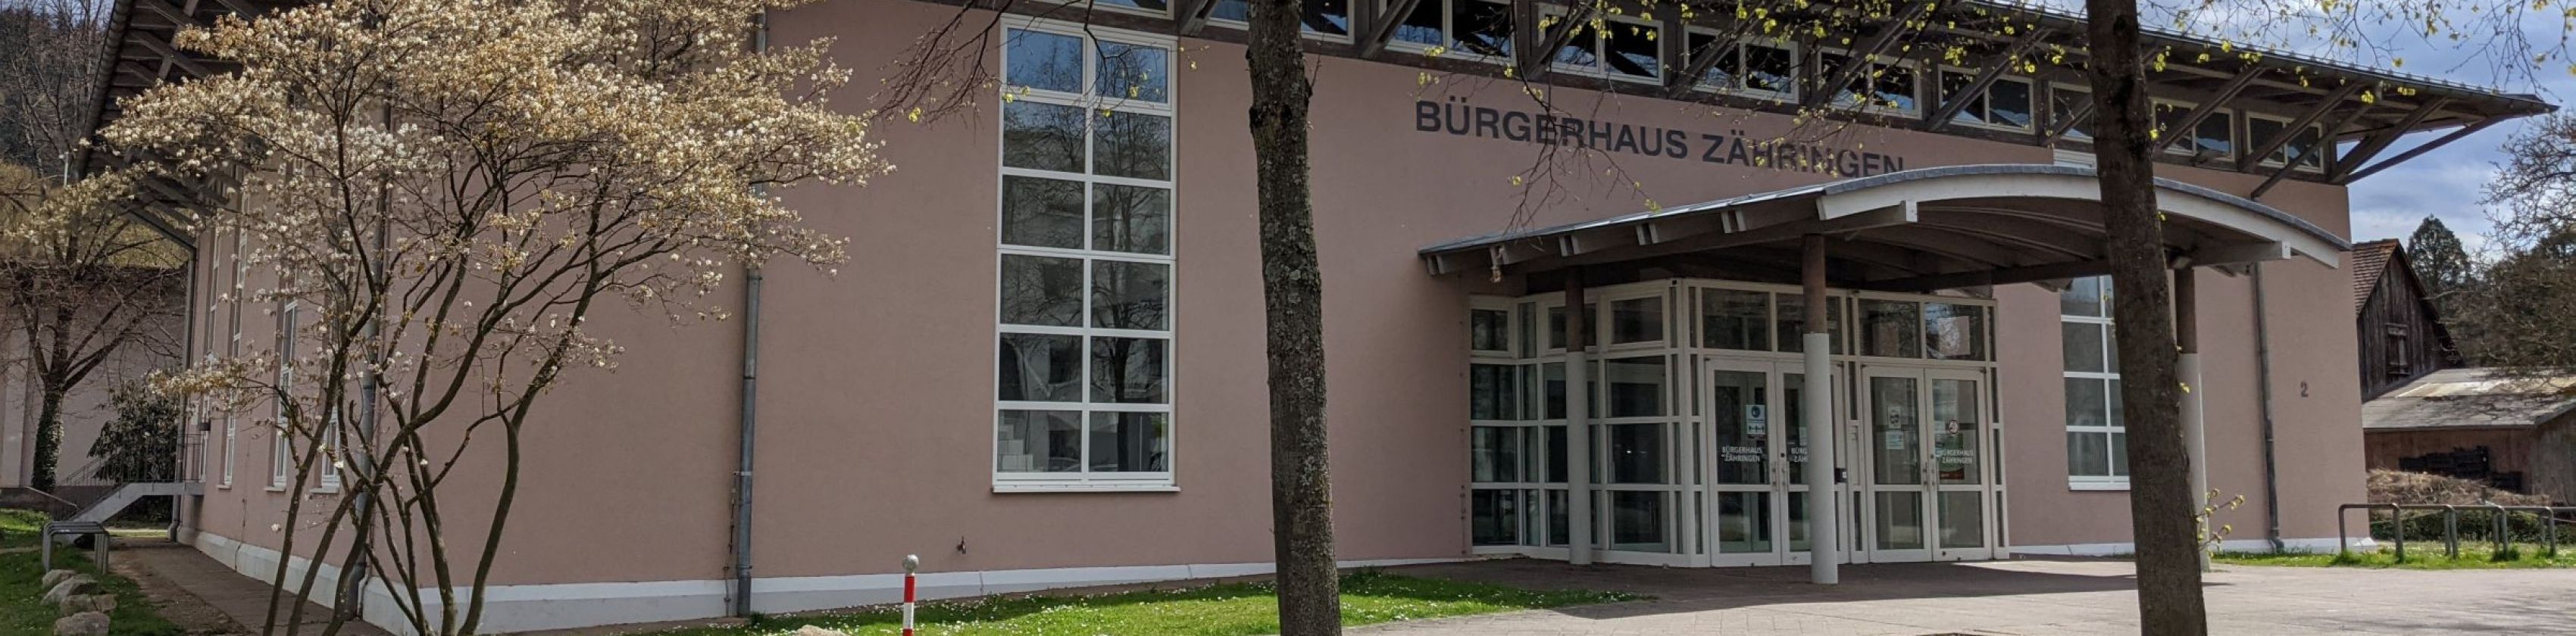 Bürgerhaus Zähringen, © Vögtle